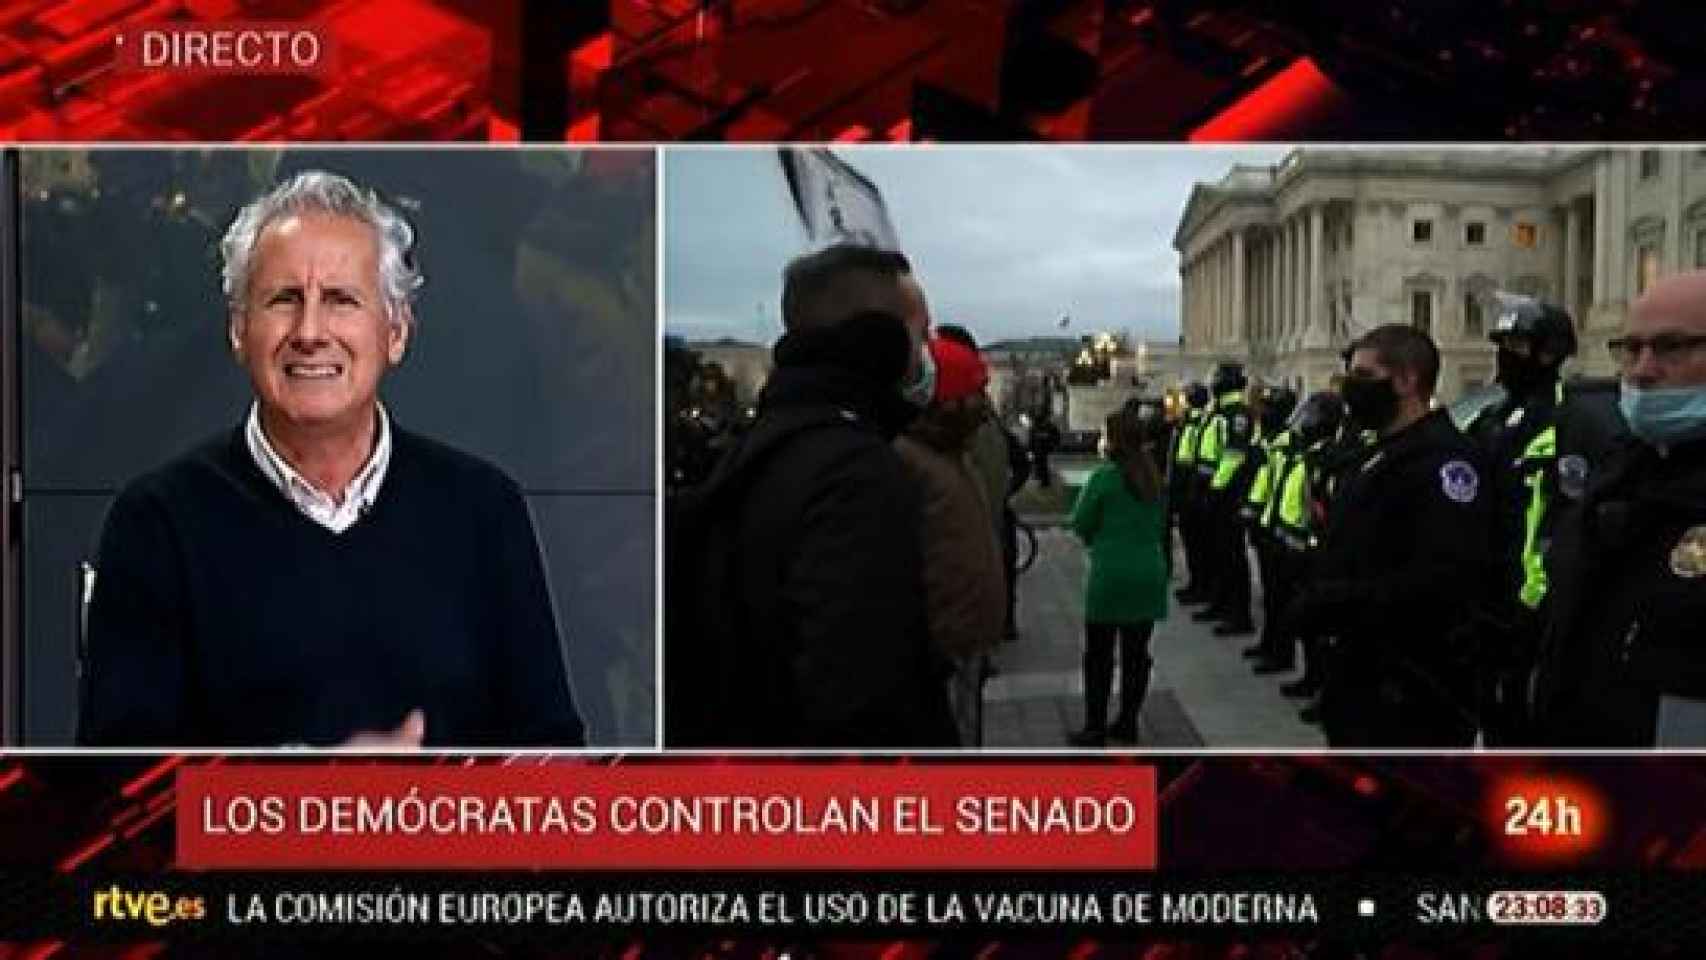 TVE relegó la información sobre el asalto al Capitolio al Canal 24 horas.